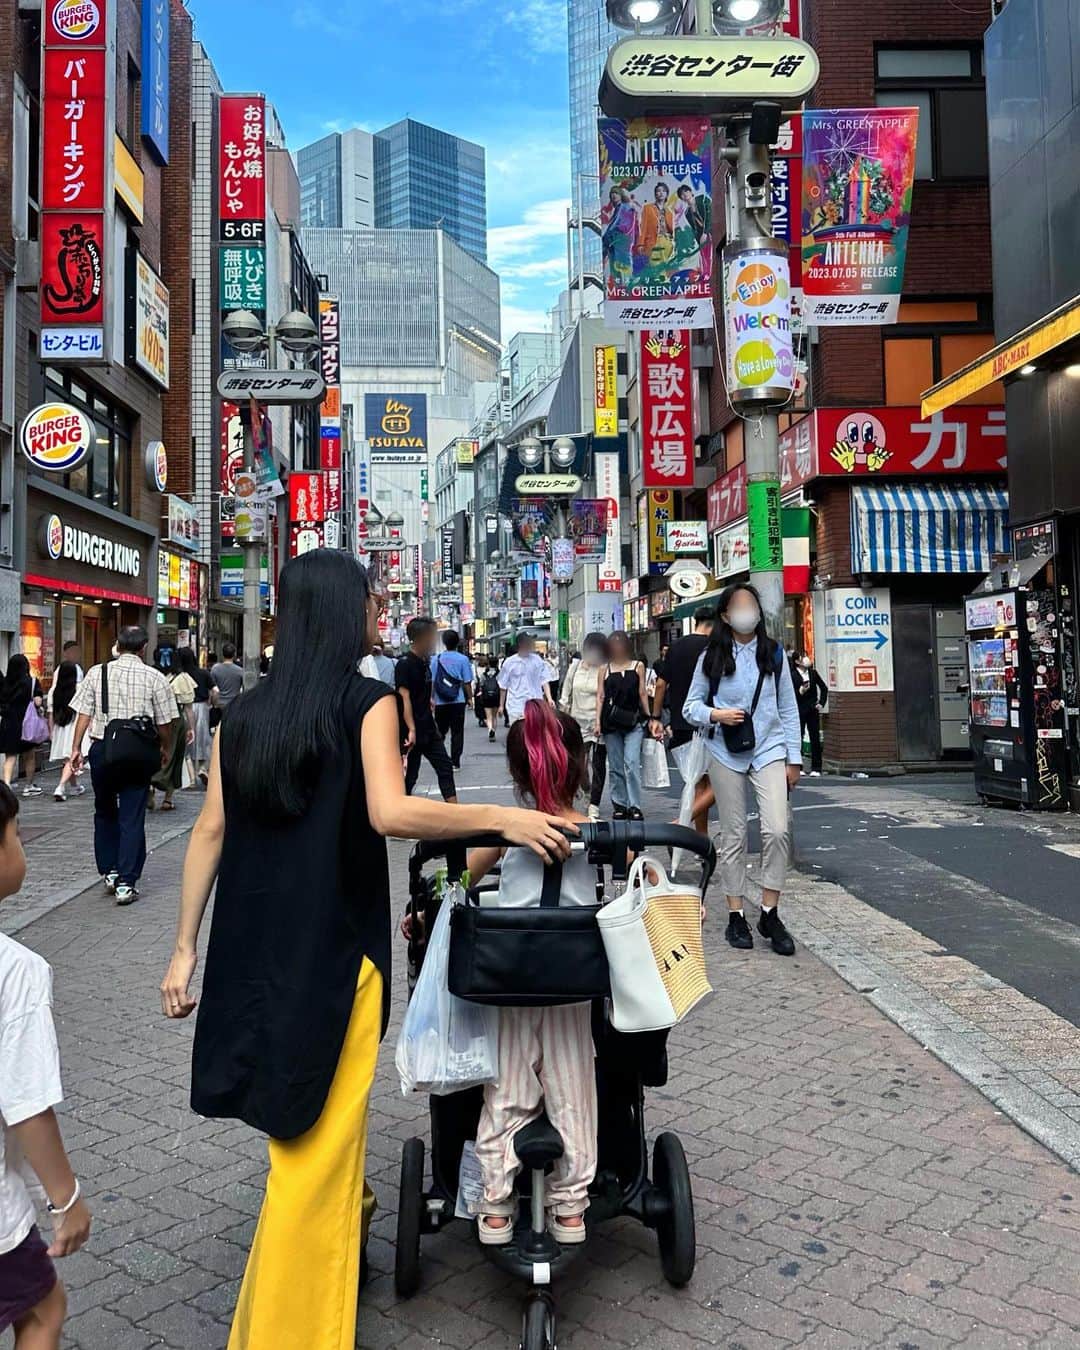 尾崎紗代子のインスタグラム：「. 一番遊んだ街は渋谷で 友達のほとんどが渋谷で出会った人たち🙋 マルキューで働き始めなければ今の自分は 居なかっただろうなぁと思う 思い入れの深い場所☺️ そんな思い出の街に 今では子供達を連れて 出かけているのってなんかエモいなぁと 思ってバシャバシャ写真撮りまくってたけど そういえばセンター街ではそんなに遊んで無いわ  #なんなん #momlife #mommylife #mommy  #育児 #ママライフ  #6歳 #4歳 #1歳 #motherof3 #motherhood  #family #familyphoto  #3人育児  #3児のママ #3児ママ  #familytime  #5人家族 #familyphotograhy #familyfirst #渋谷 #shibuya #japan」